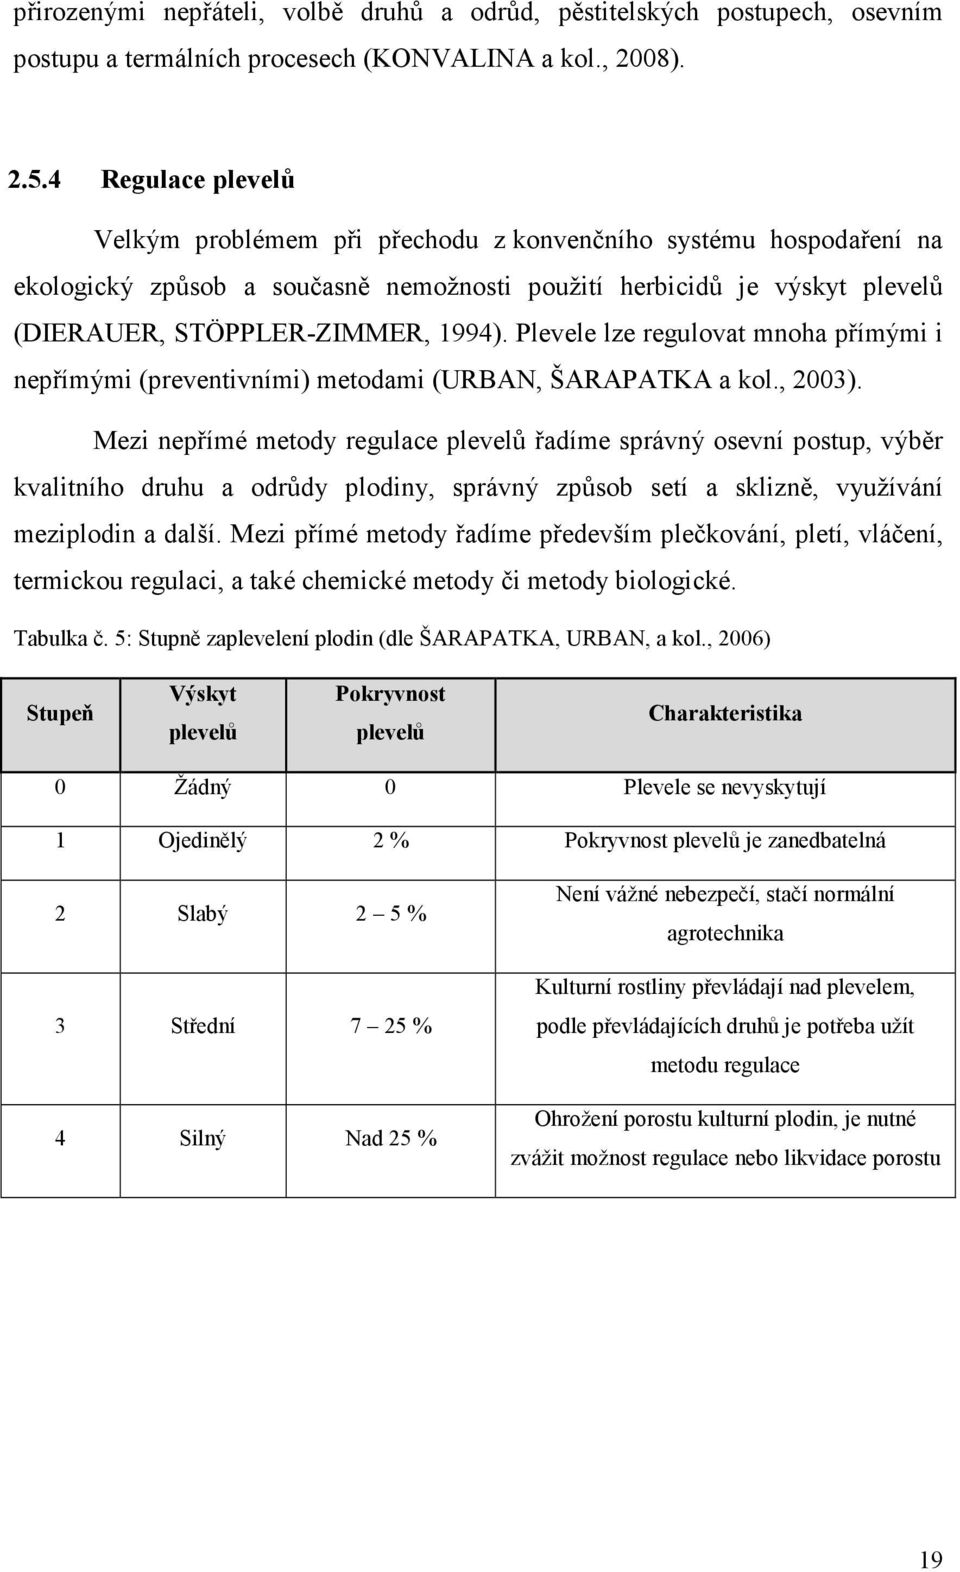 Plevele lze regulovat mnoha přímými i nepřímými (preventivními) metodami (URBAN, ŠARAPATKA a kol., 2003).